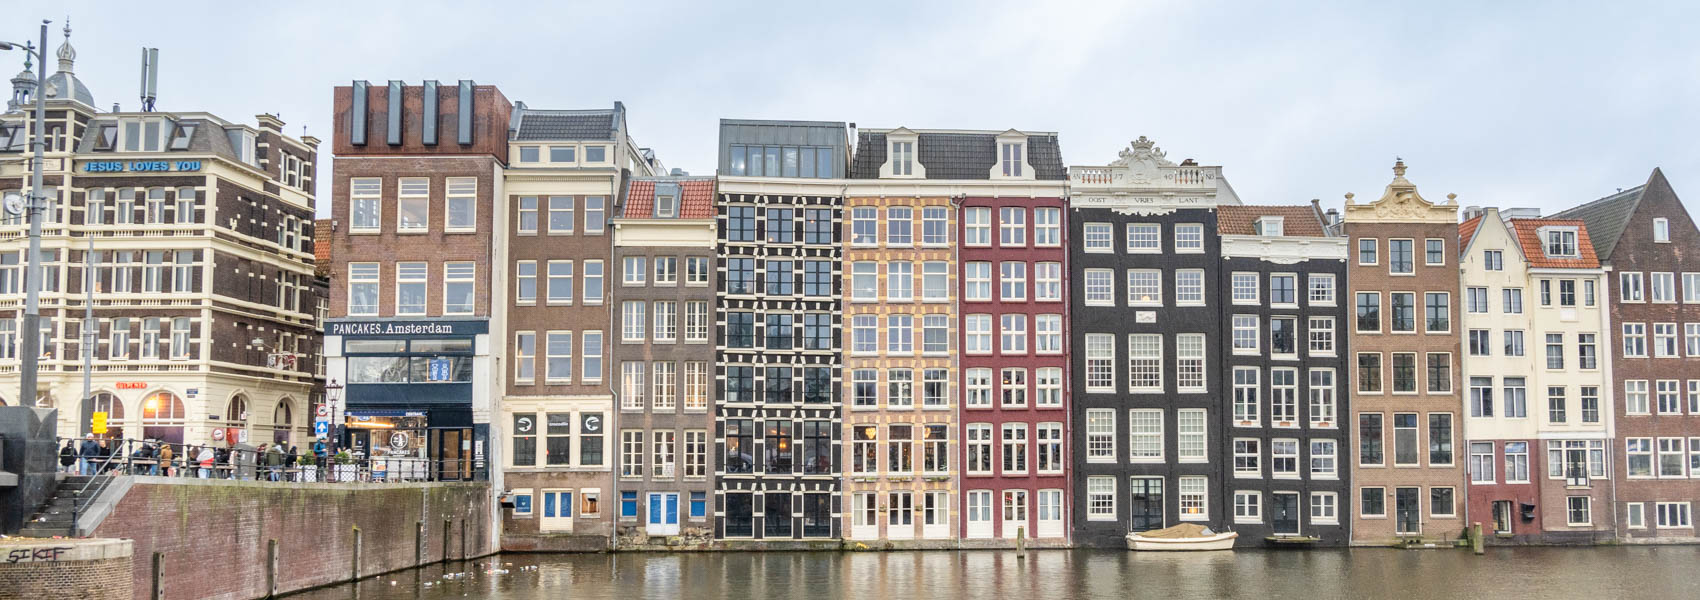 Canaux de la ville d'Amsterdam